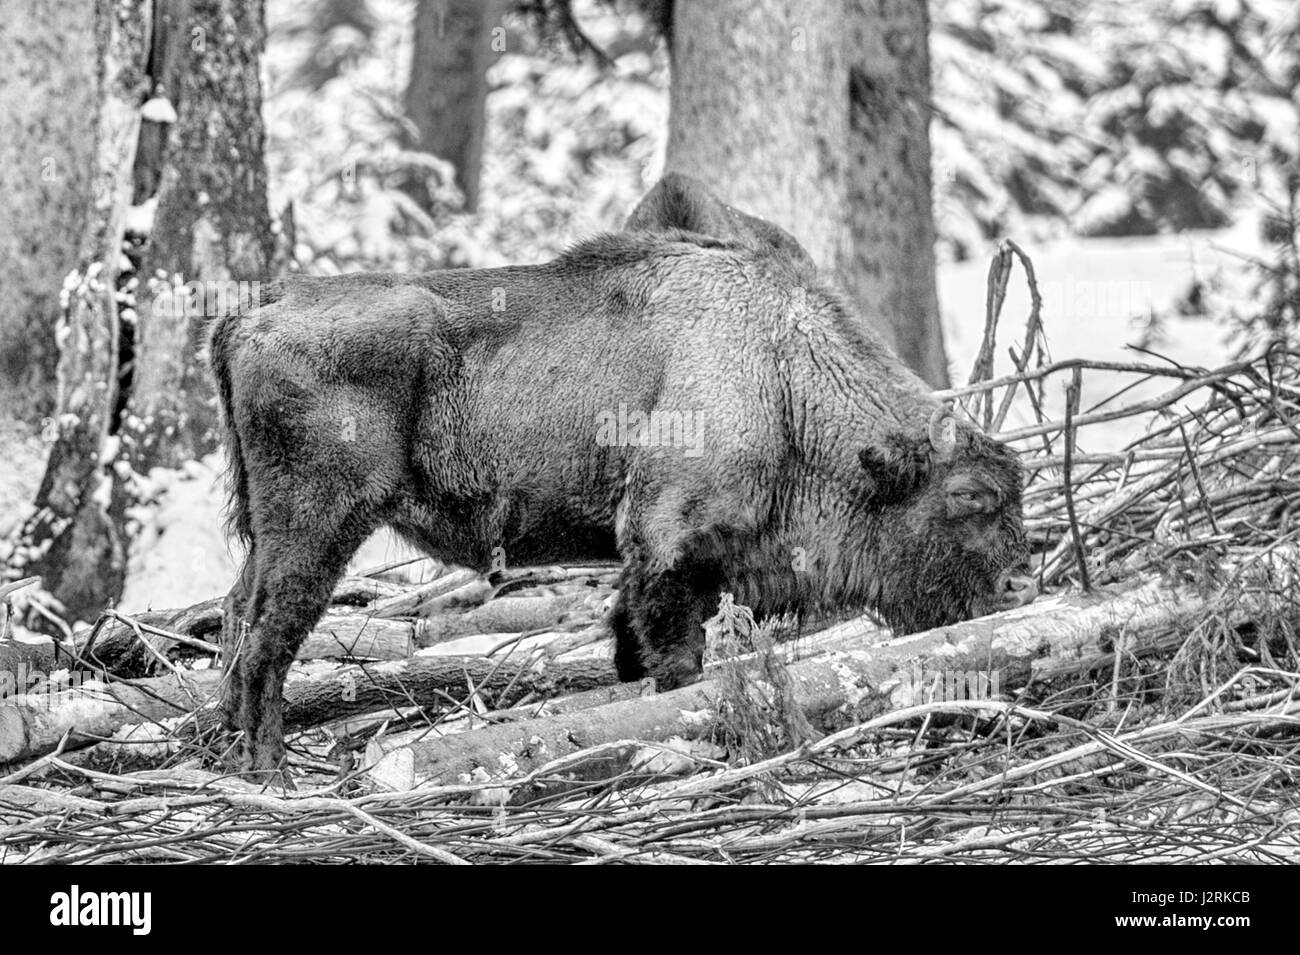 Adulte européen unique le Bison des bois (Bison bonasus) représenté dans des bois enneigés au milieu de l'hiver. (Beaux-arts, High Key, noir et blanc) Banque D'Images